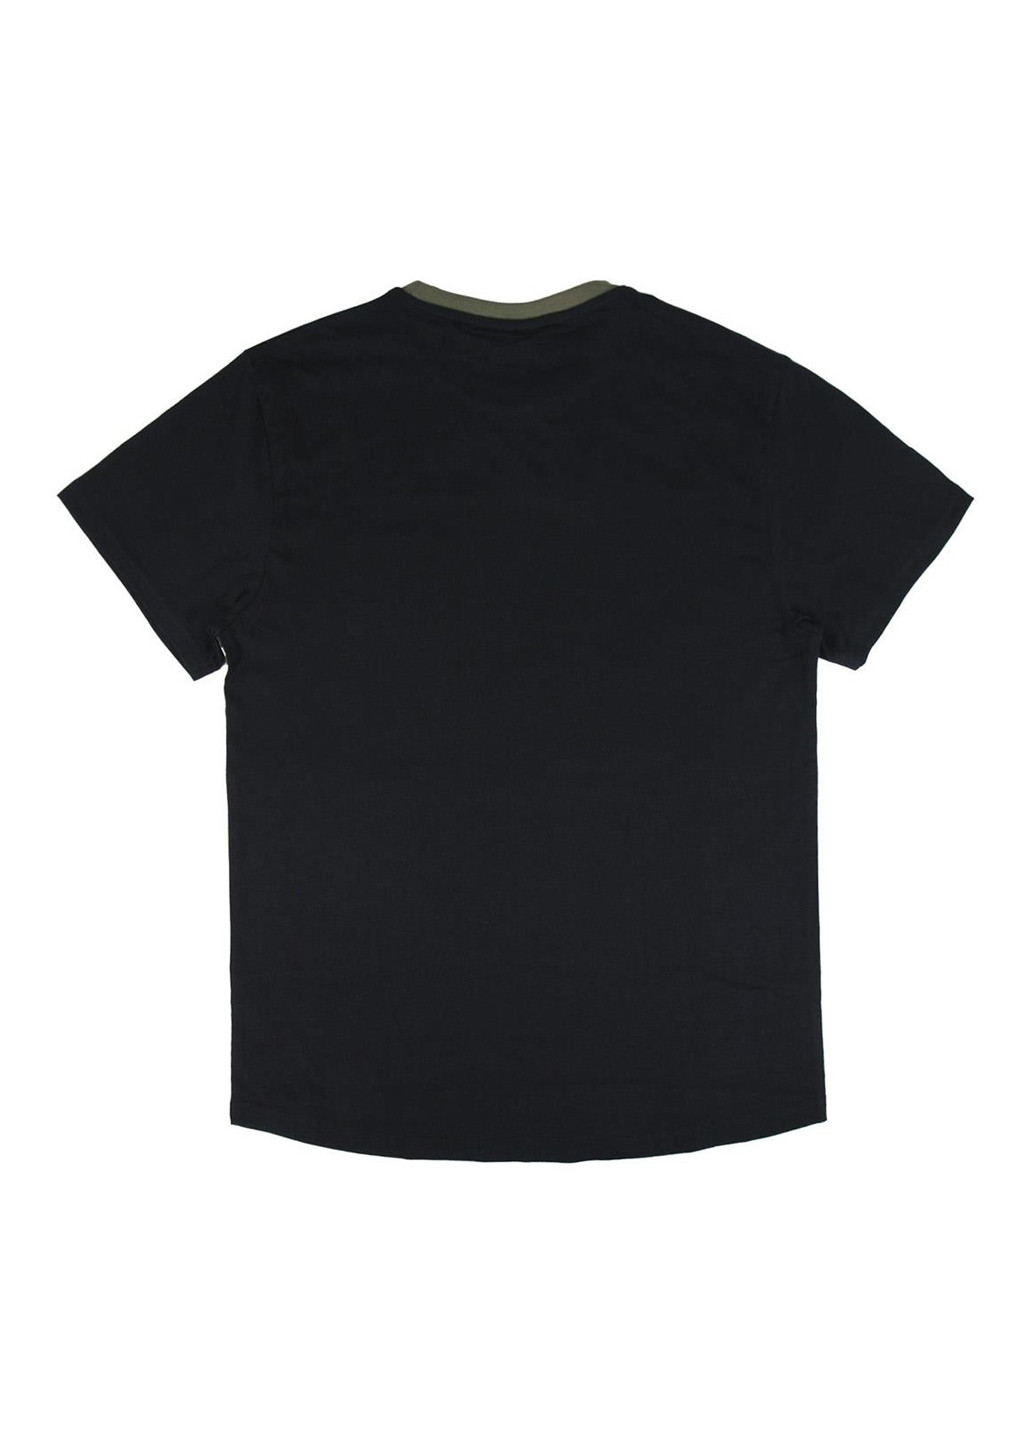 Комбинированная летняя футболка fortnite - single jersey black Cerda